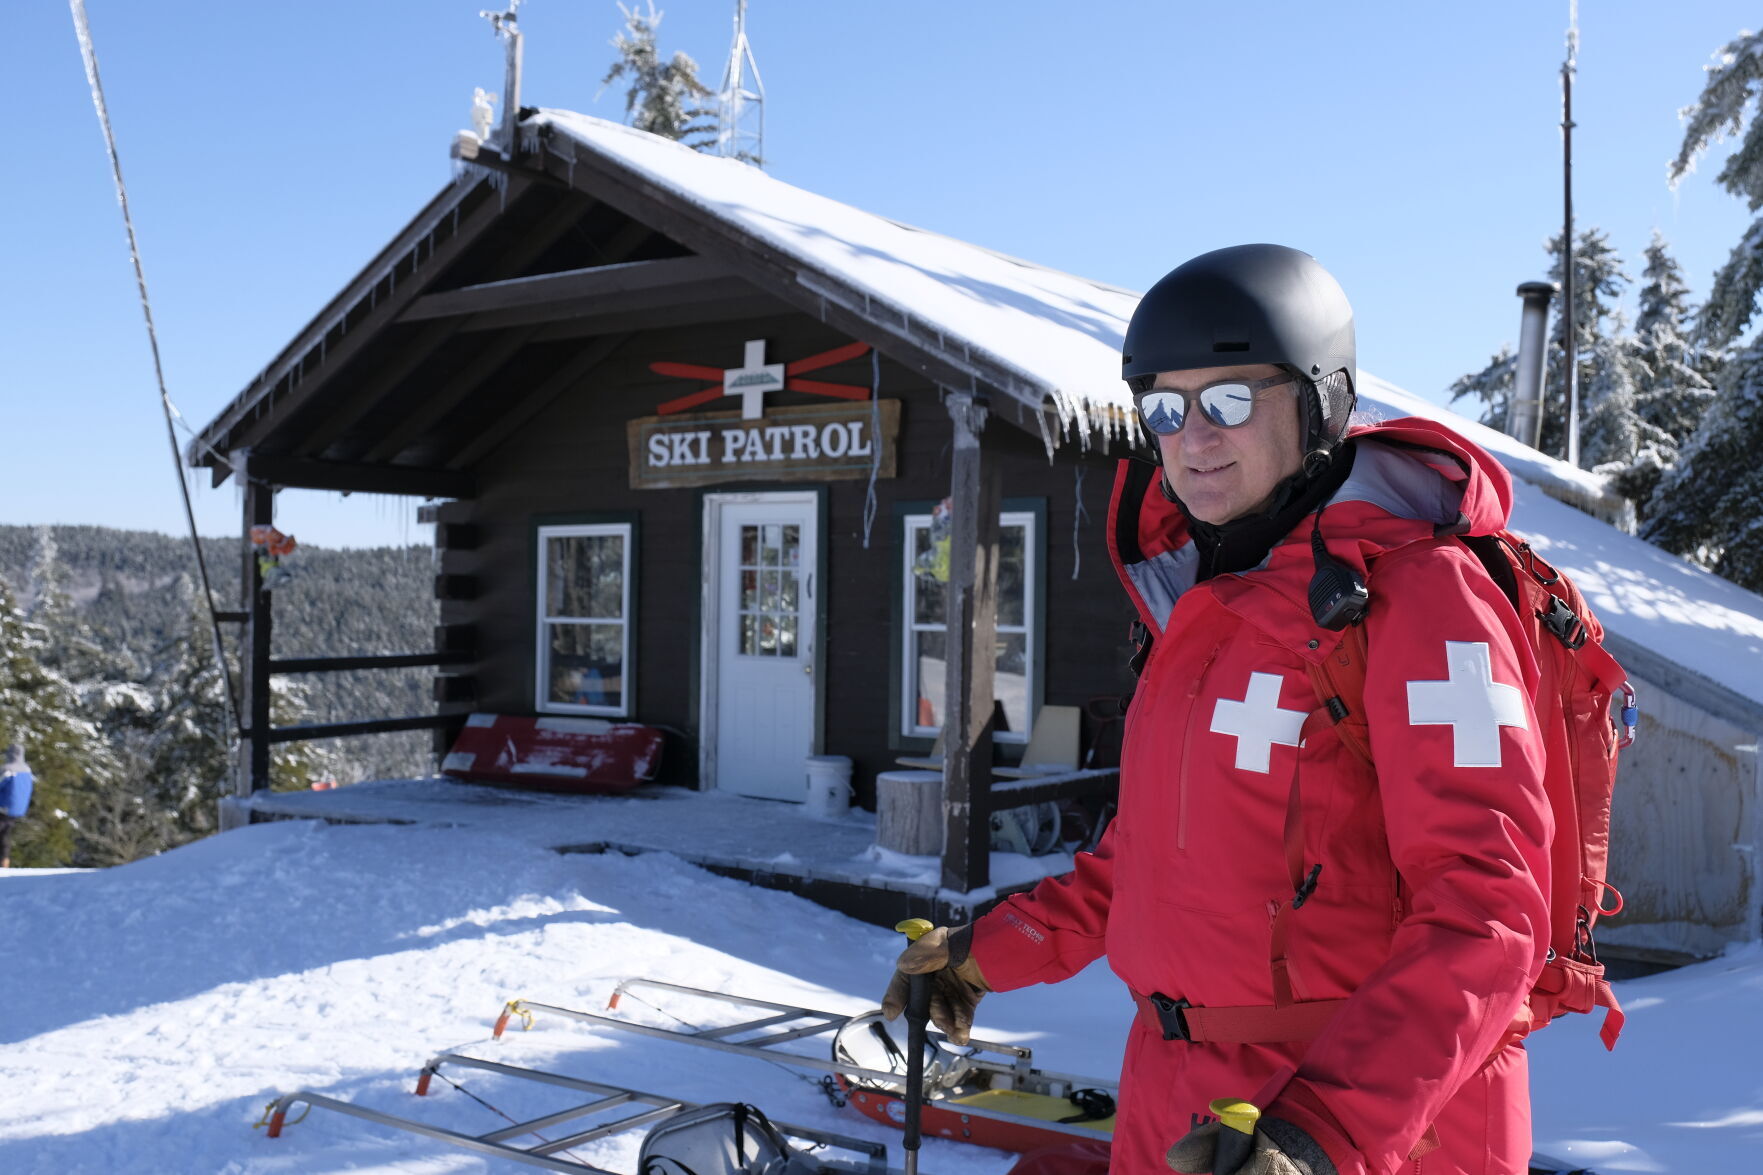 NH Winter: Ski patrol keeps the slopes safe at Ragged   Winter